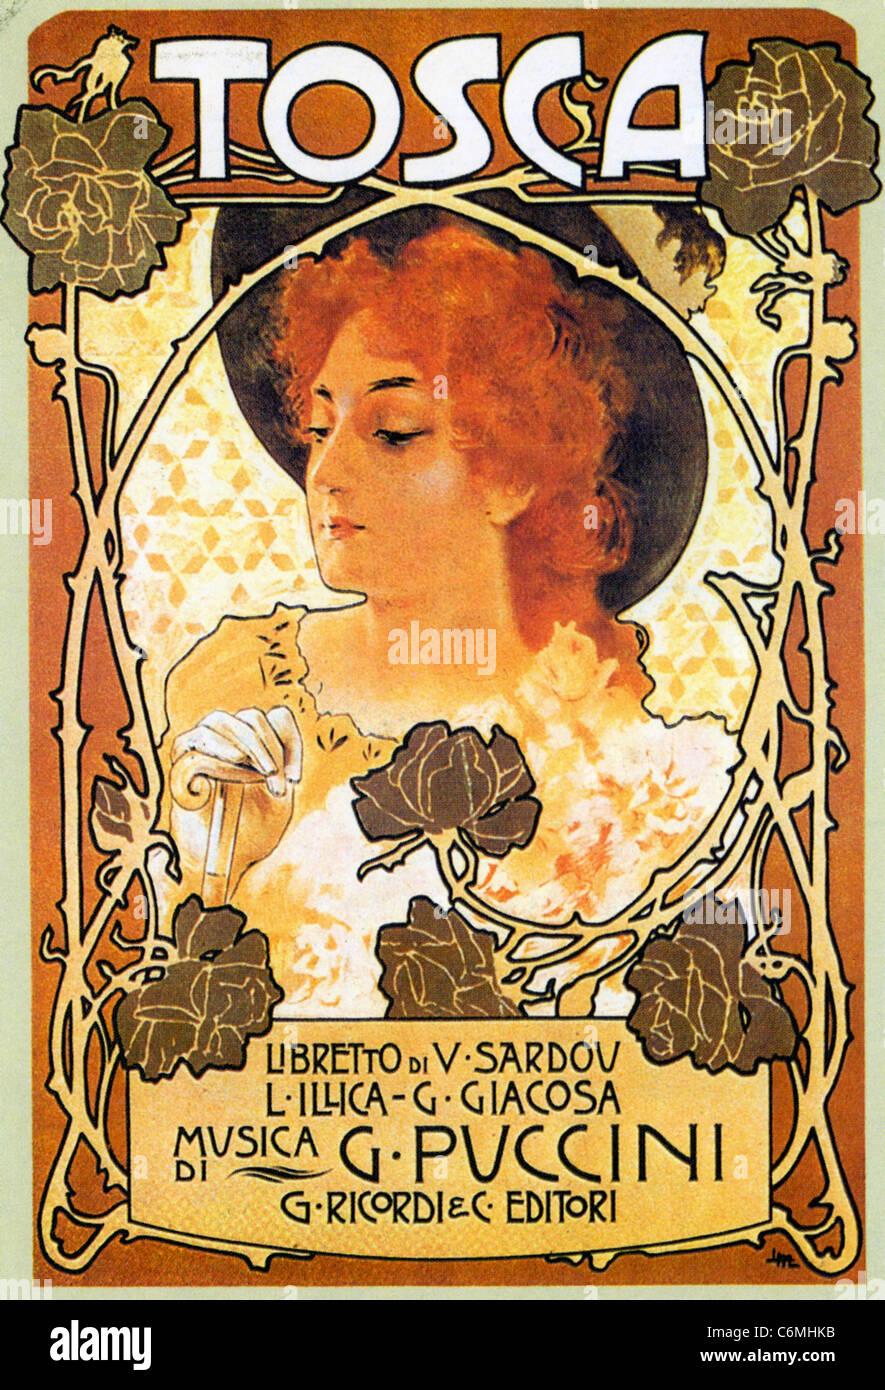 TOSCA  Poster for 1900 premiere at Teatro Costanzi, Rome Stock Photo